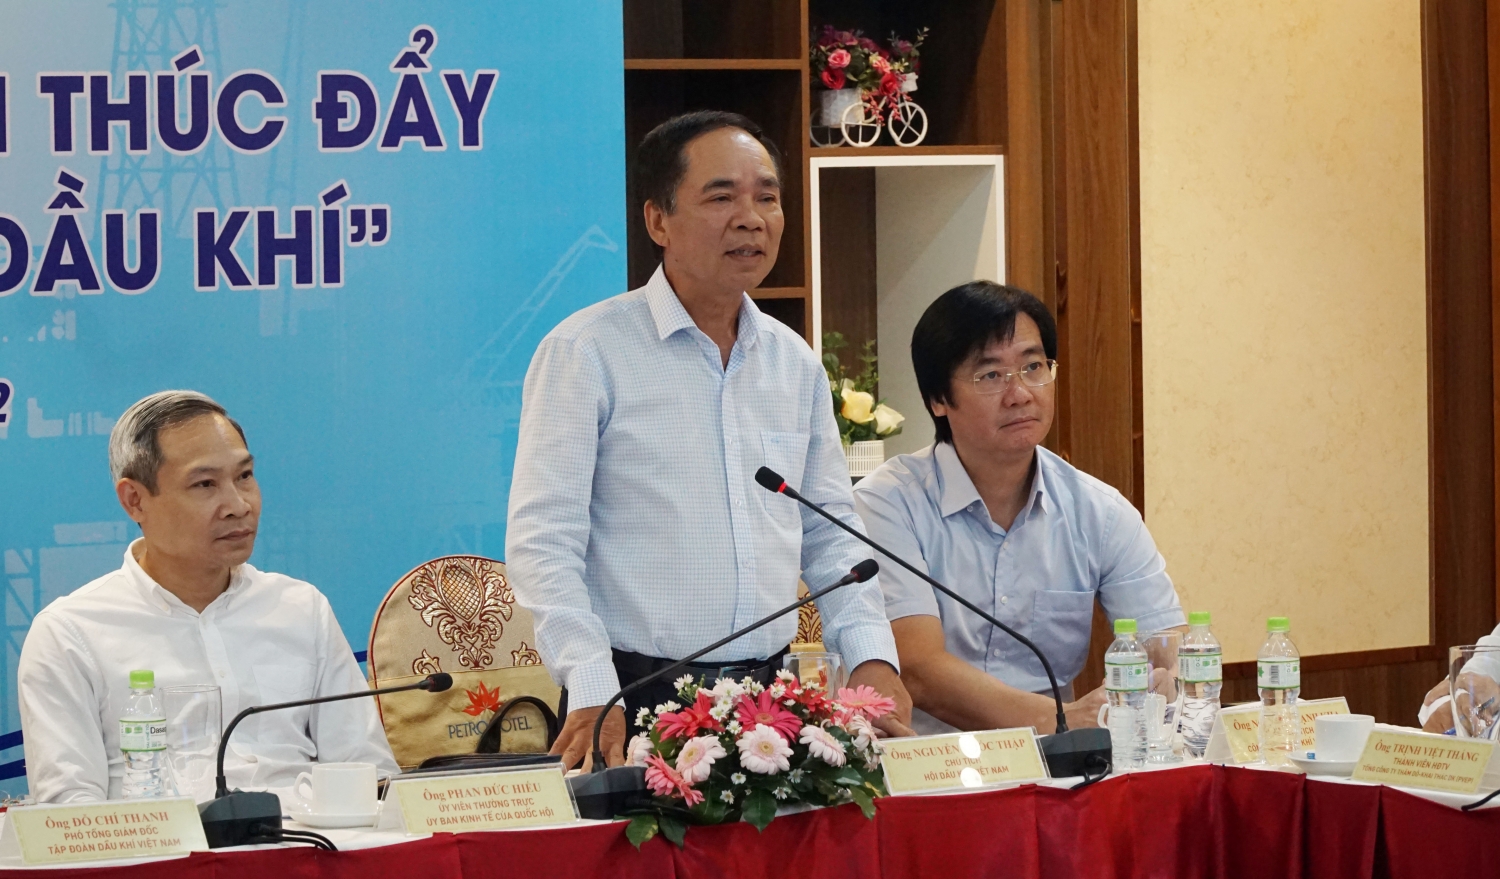 Chủ tịch Hội Dầu khí Việt Nam Nguyễn Quốc Thập trình bày tại Hội thảo